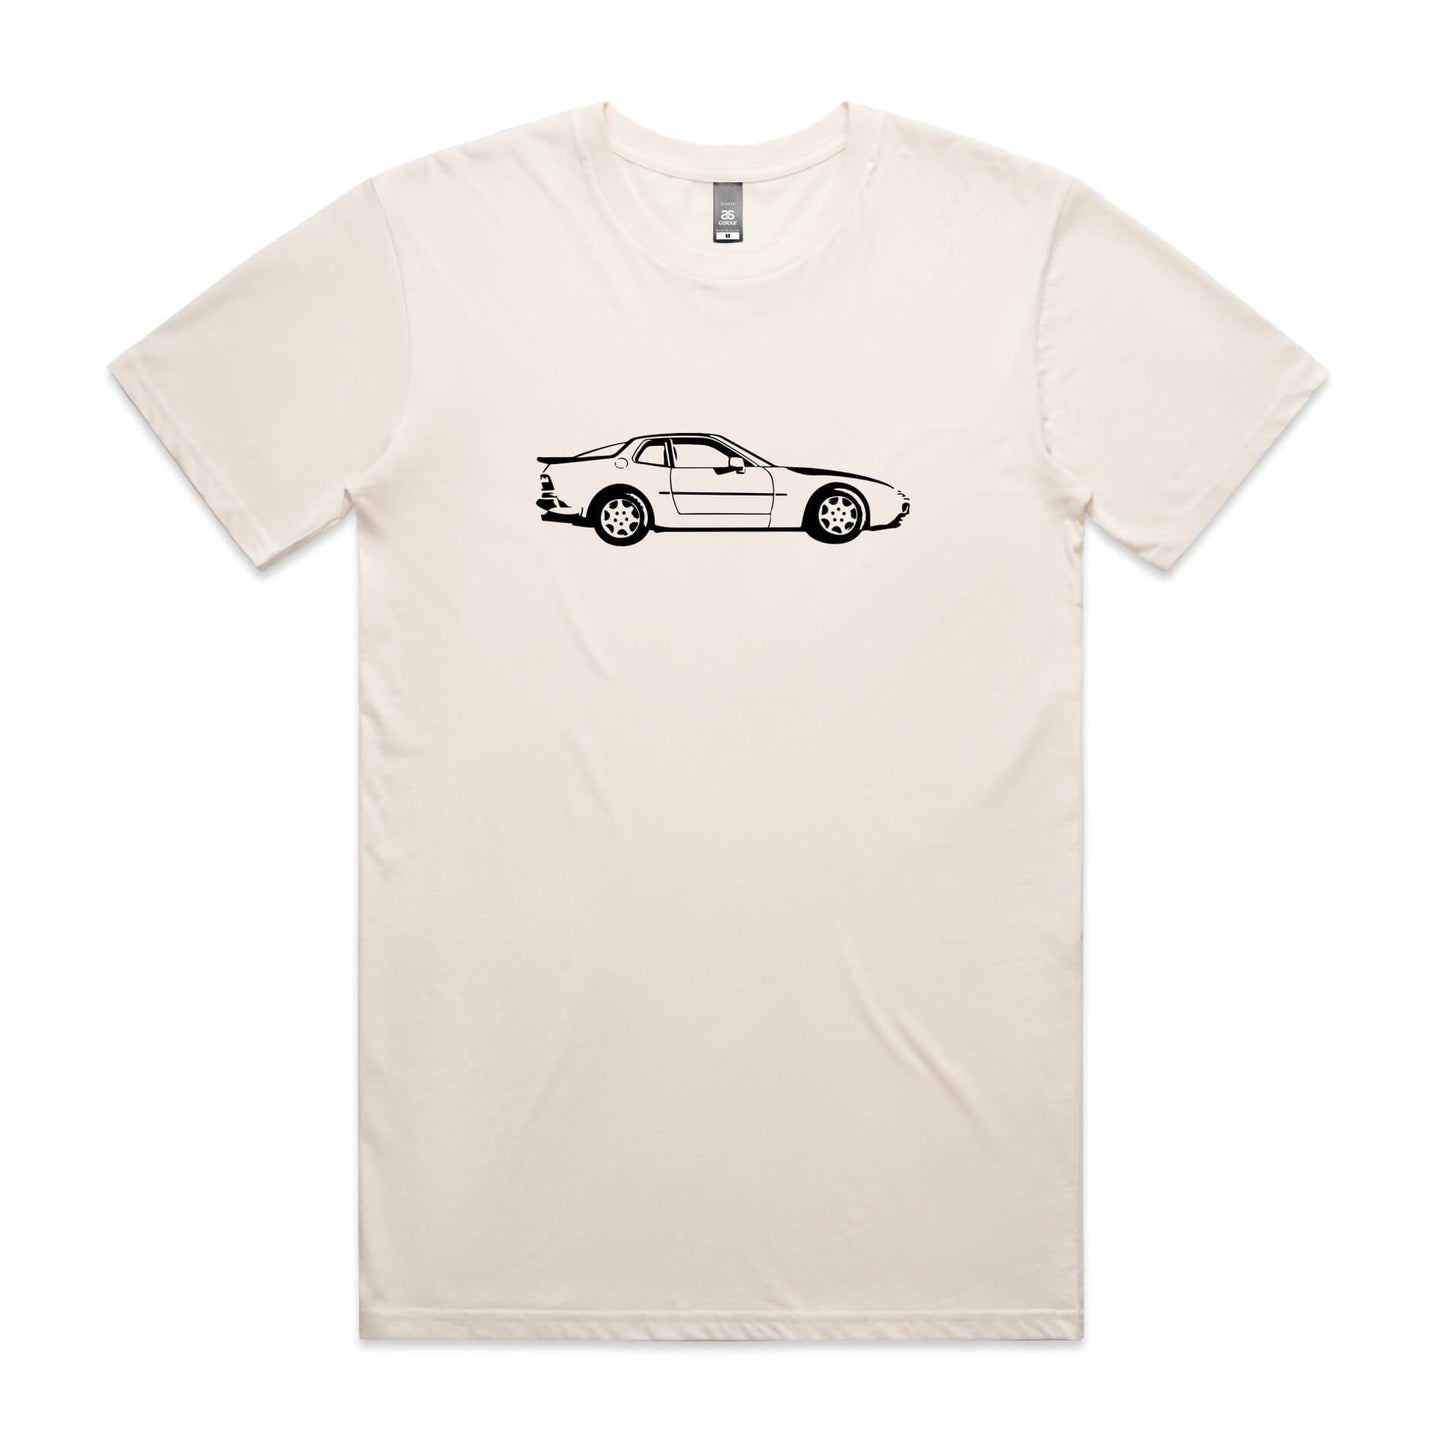 Porsche 944 t-shirt in beige with black car graphic